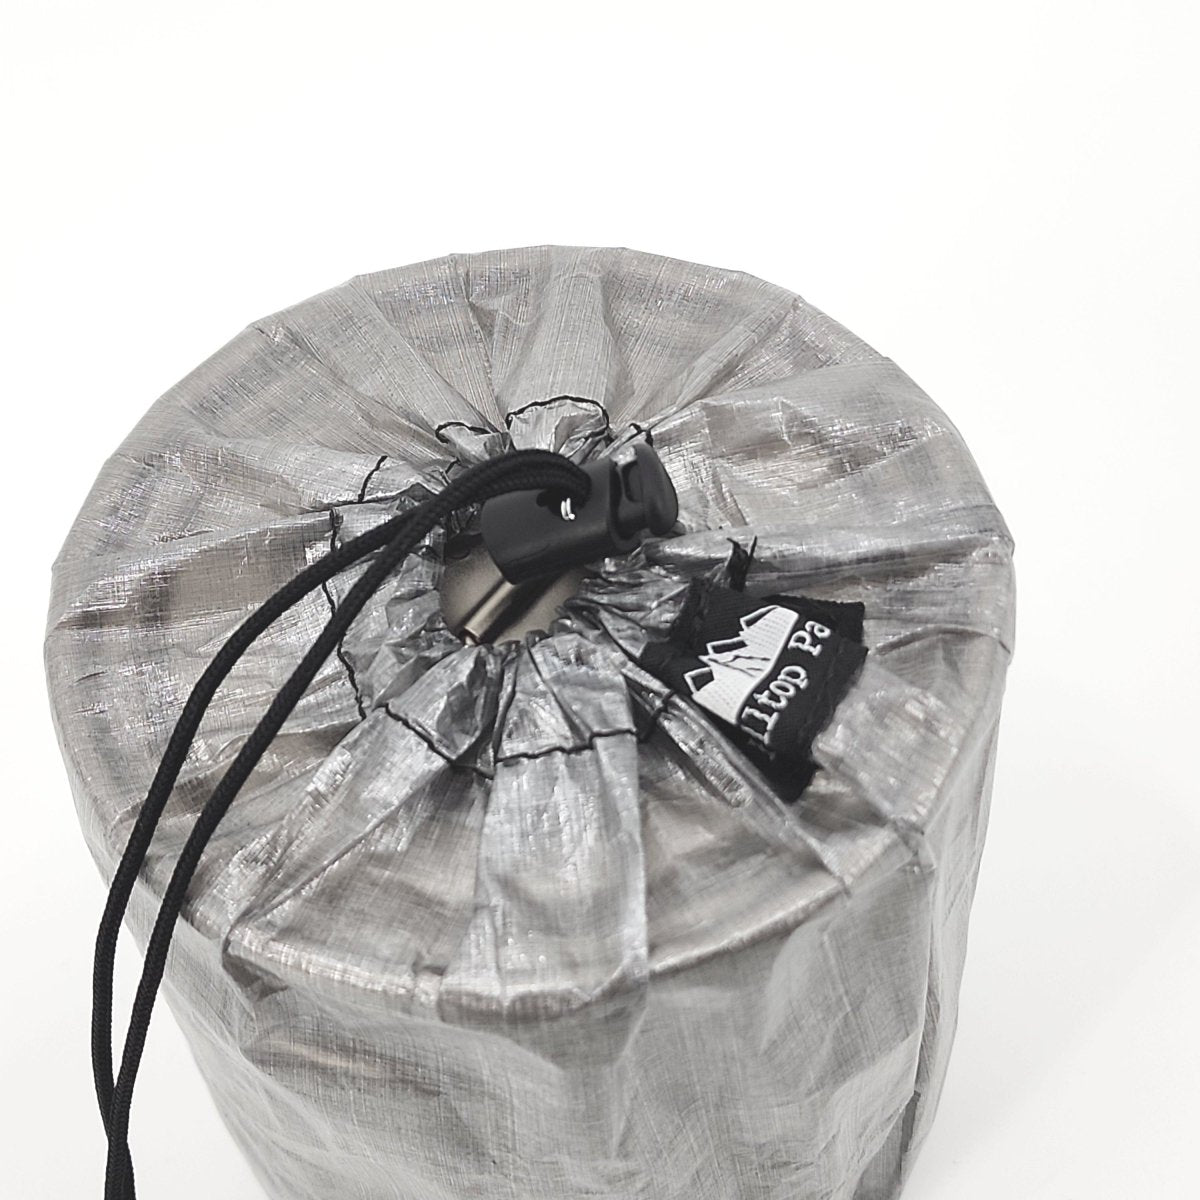 POTANE Precut Bags for Food 150 Gallon 11x16, Quart 8x12, Pint 6x10, S –  Potane